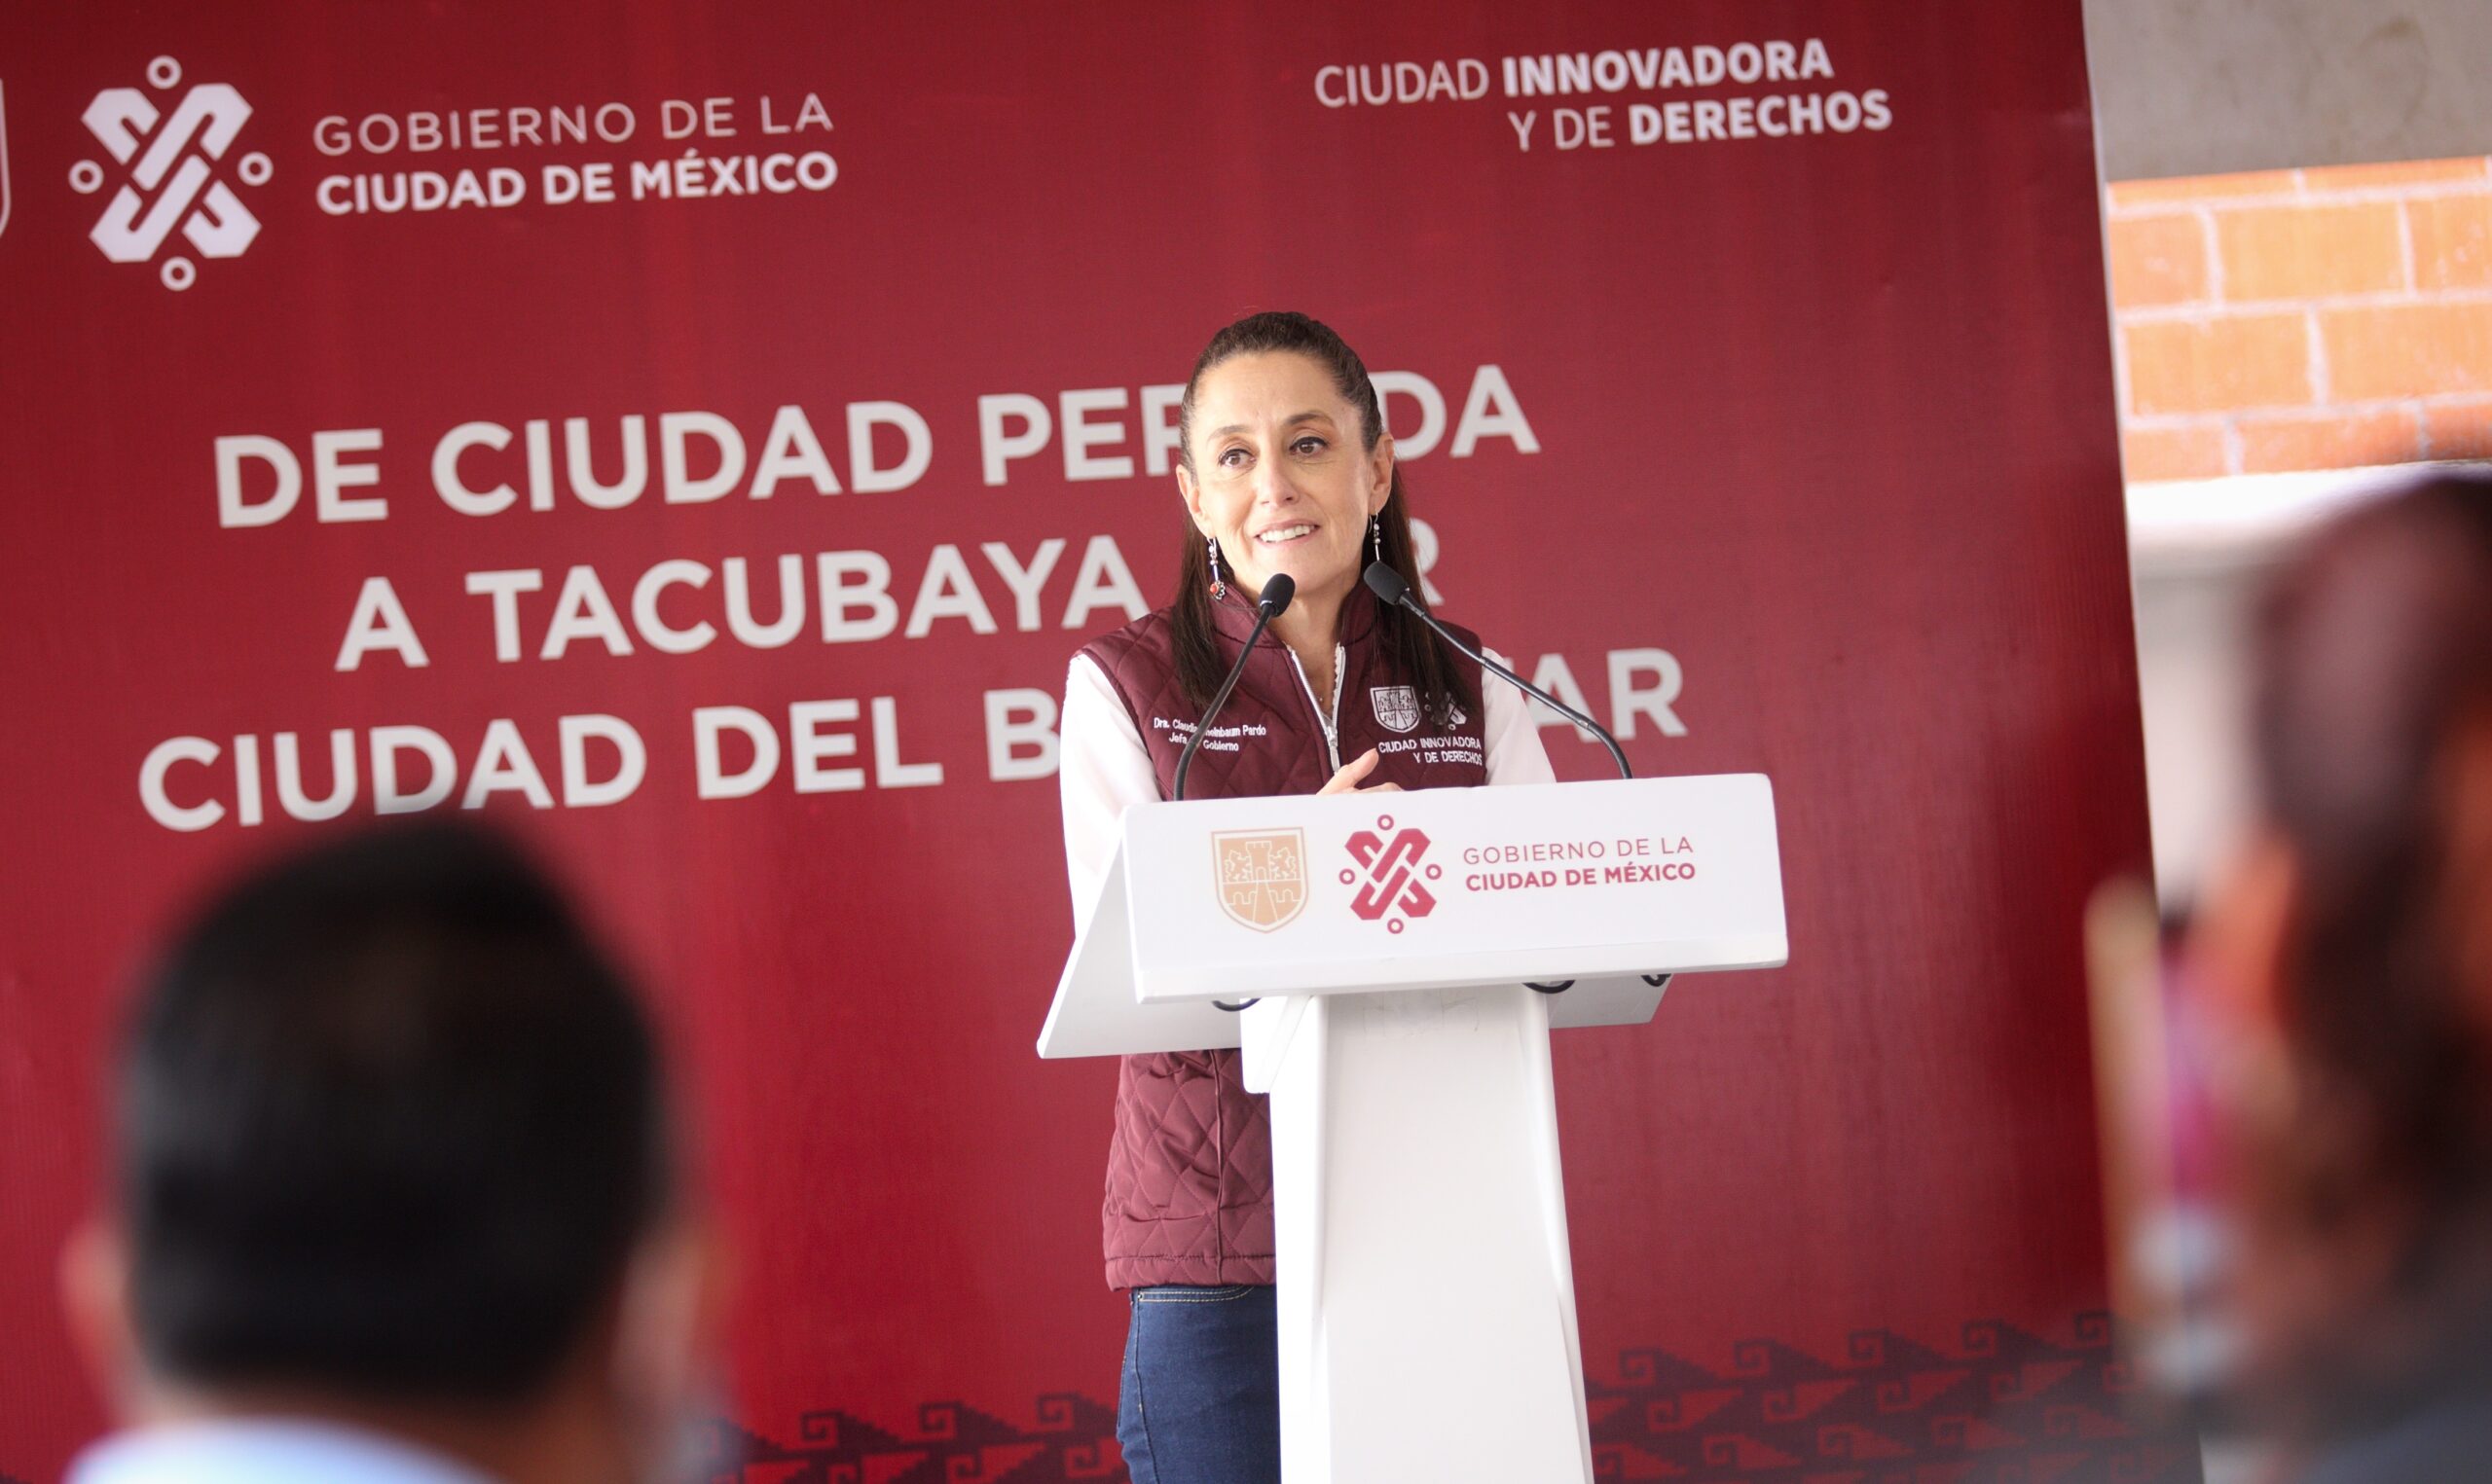 Otorga Gobierno de la Ciudad de Mexico derecho a la vivienda a 185 familias de Ciudad Perdida Tacubaya ahora nombrada Ciudad del Bienestar scaled